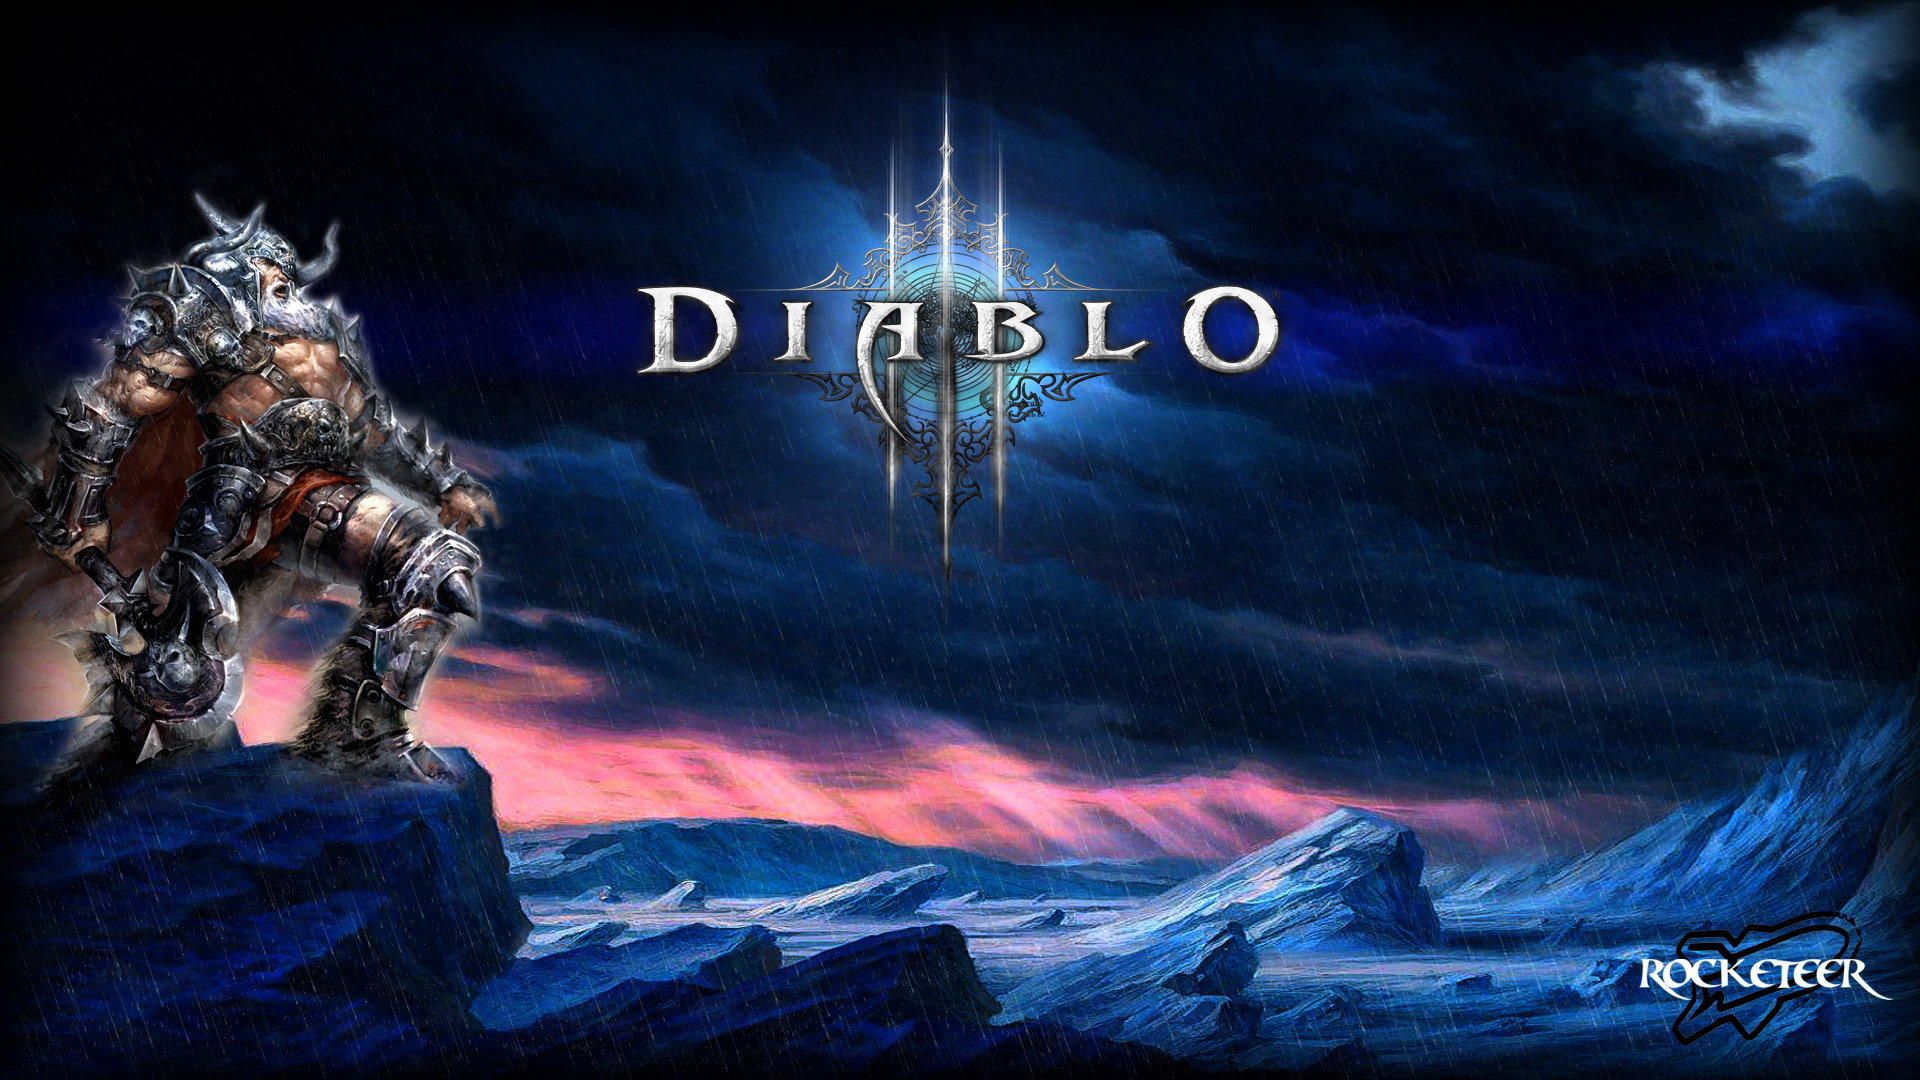 Best Diablo 3 wallpaper ID:30924 for High Resolution hd 1920x1080 desktop